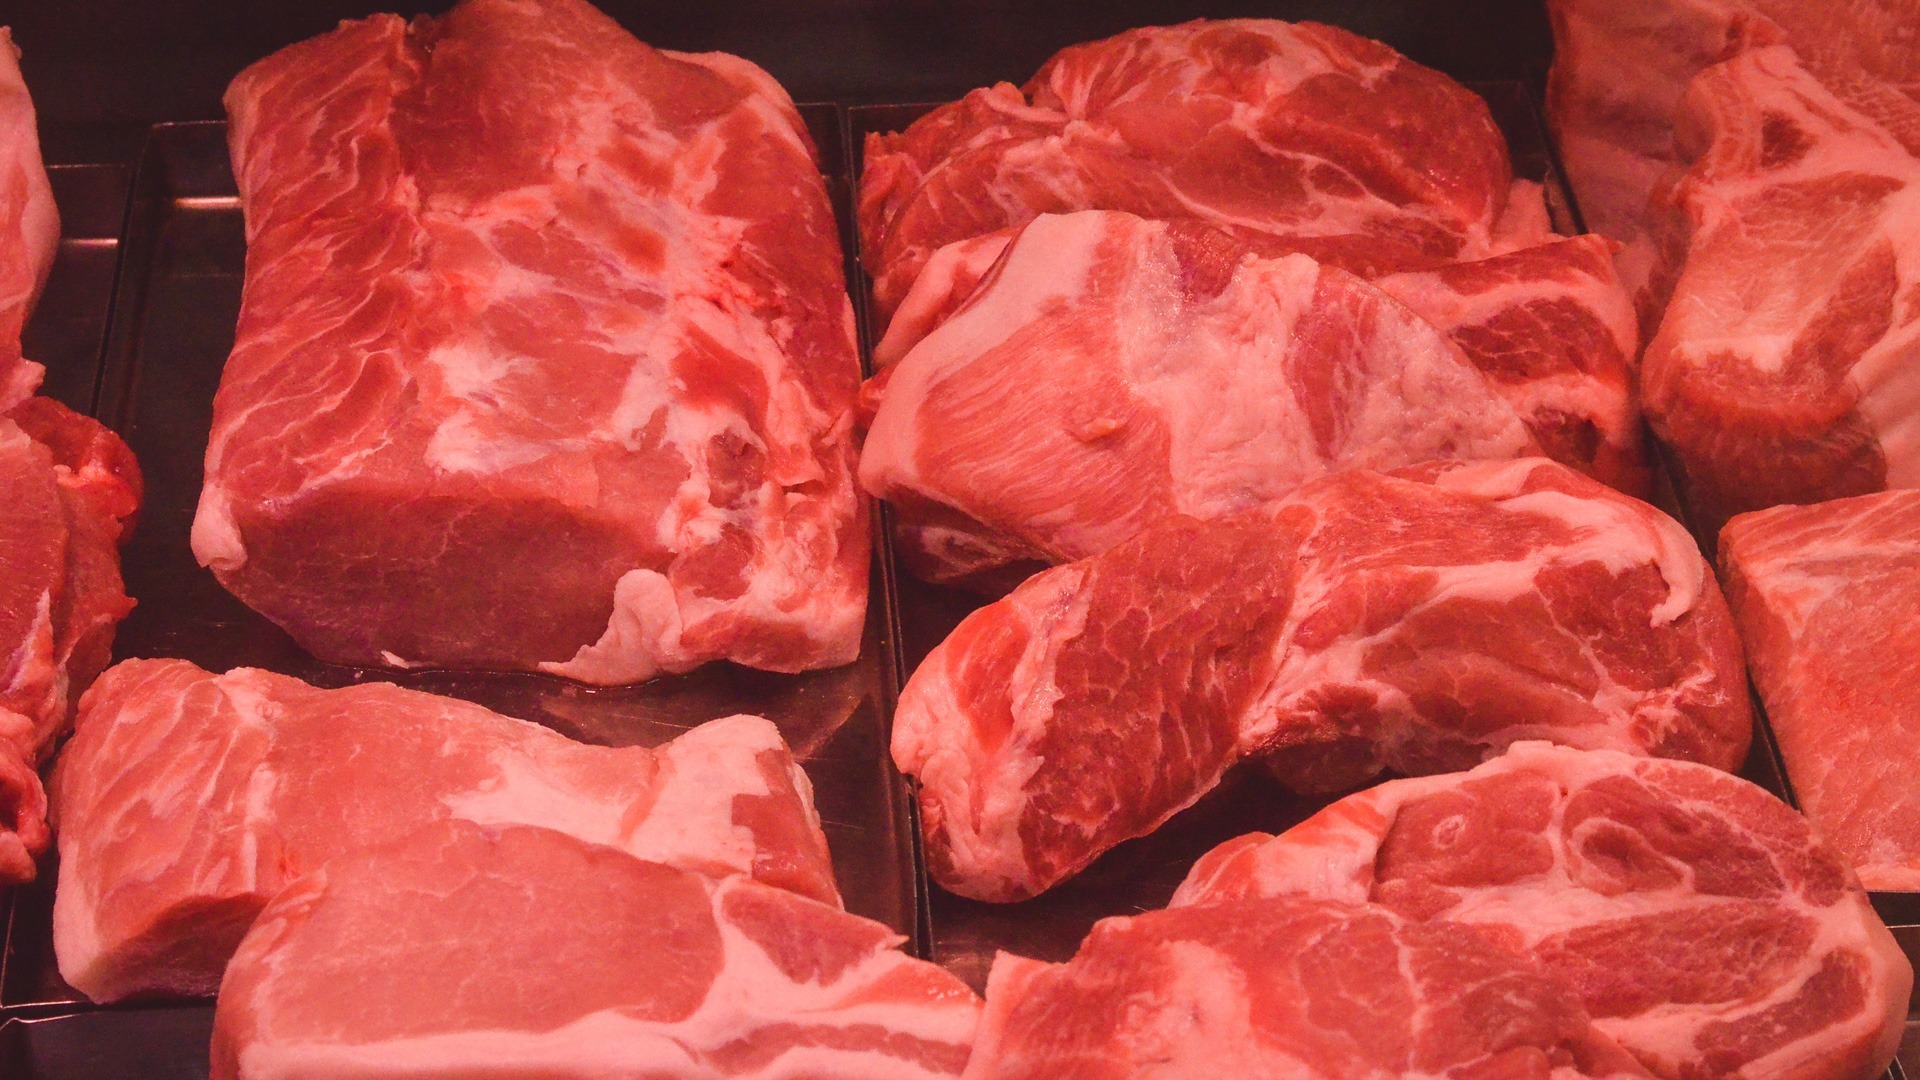 Ученые: любители красного мяса рискуют получить диабет 2 типа. Как снизить риски